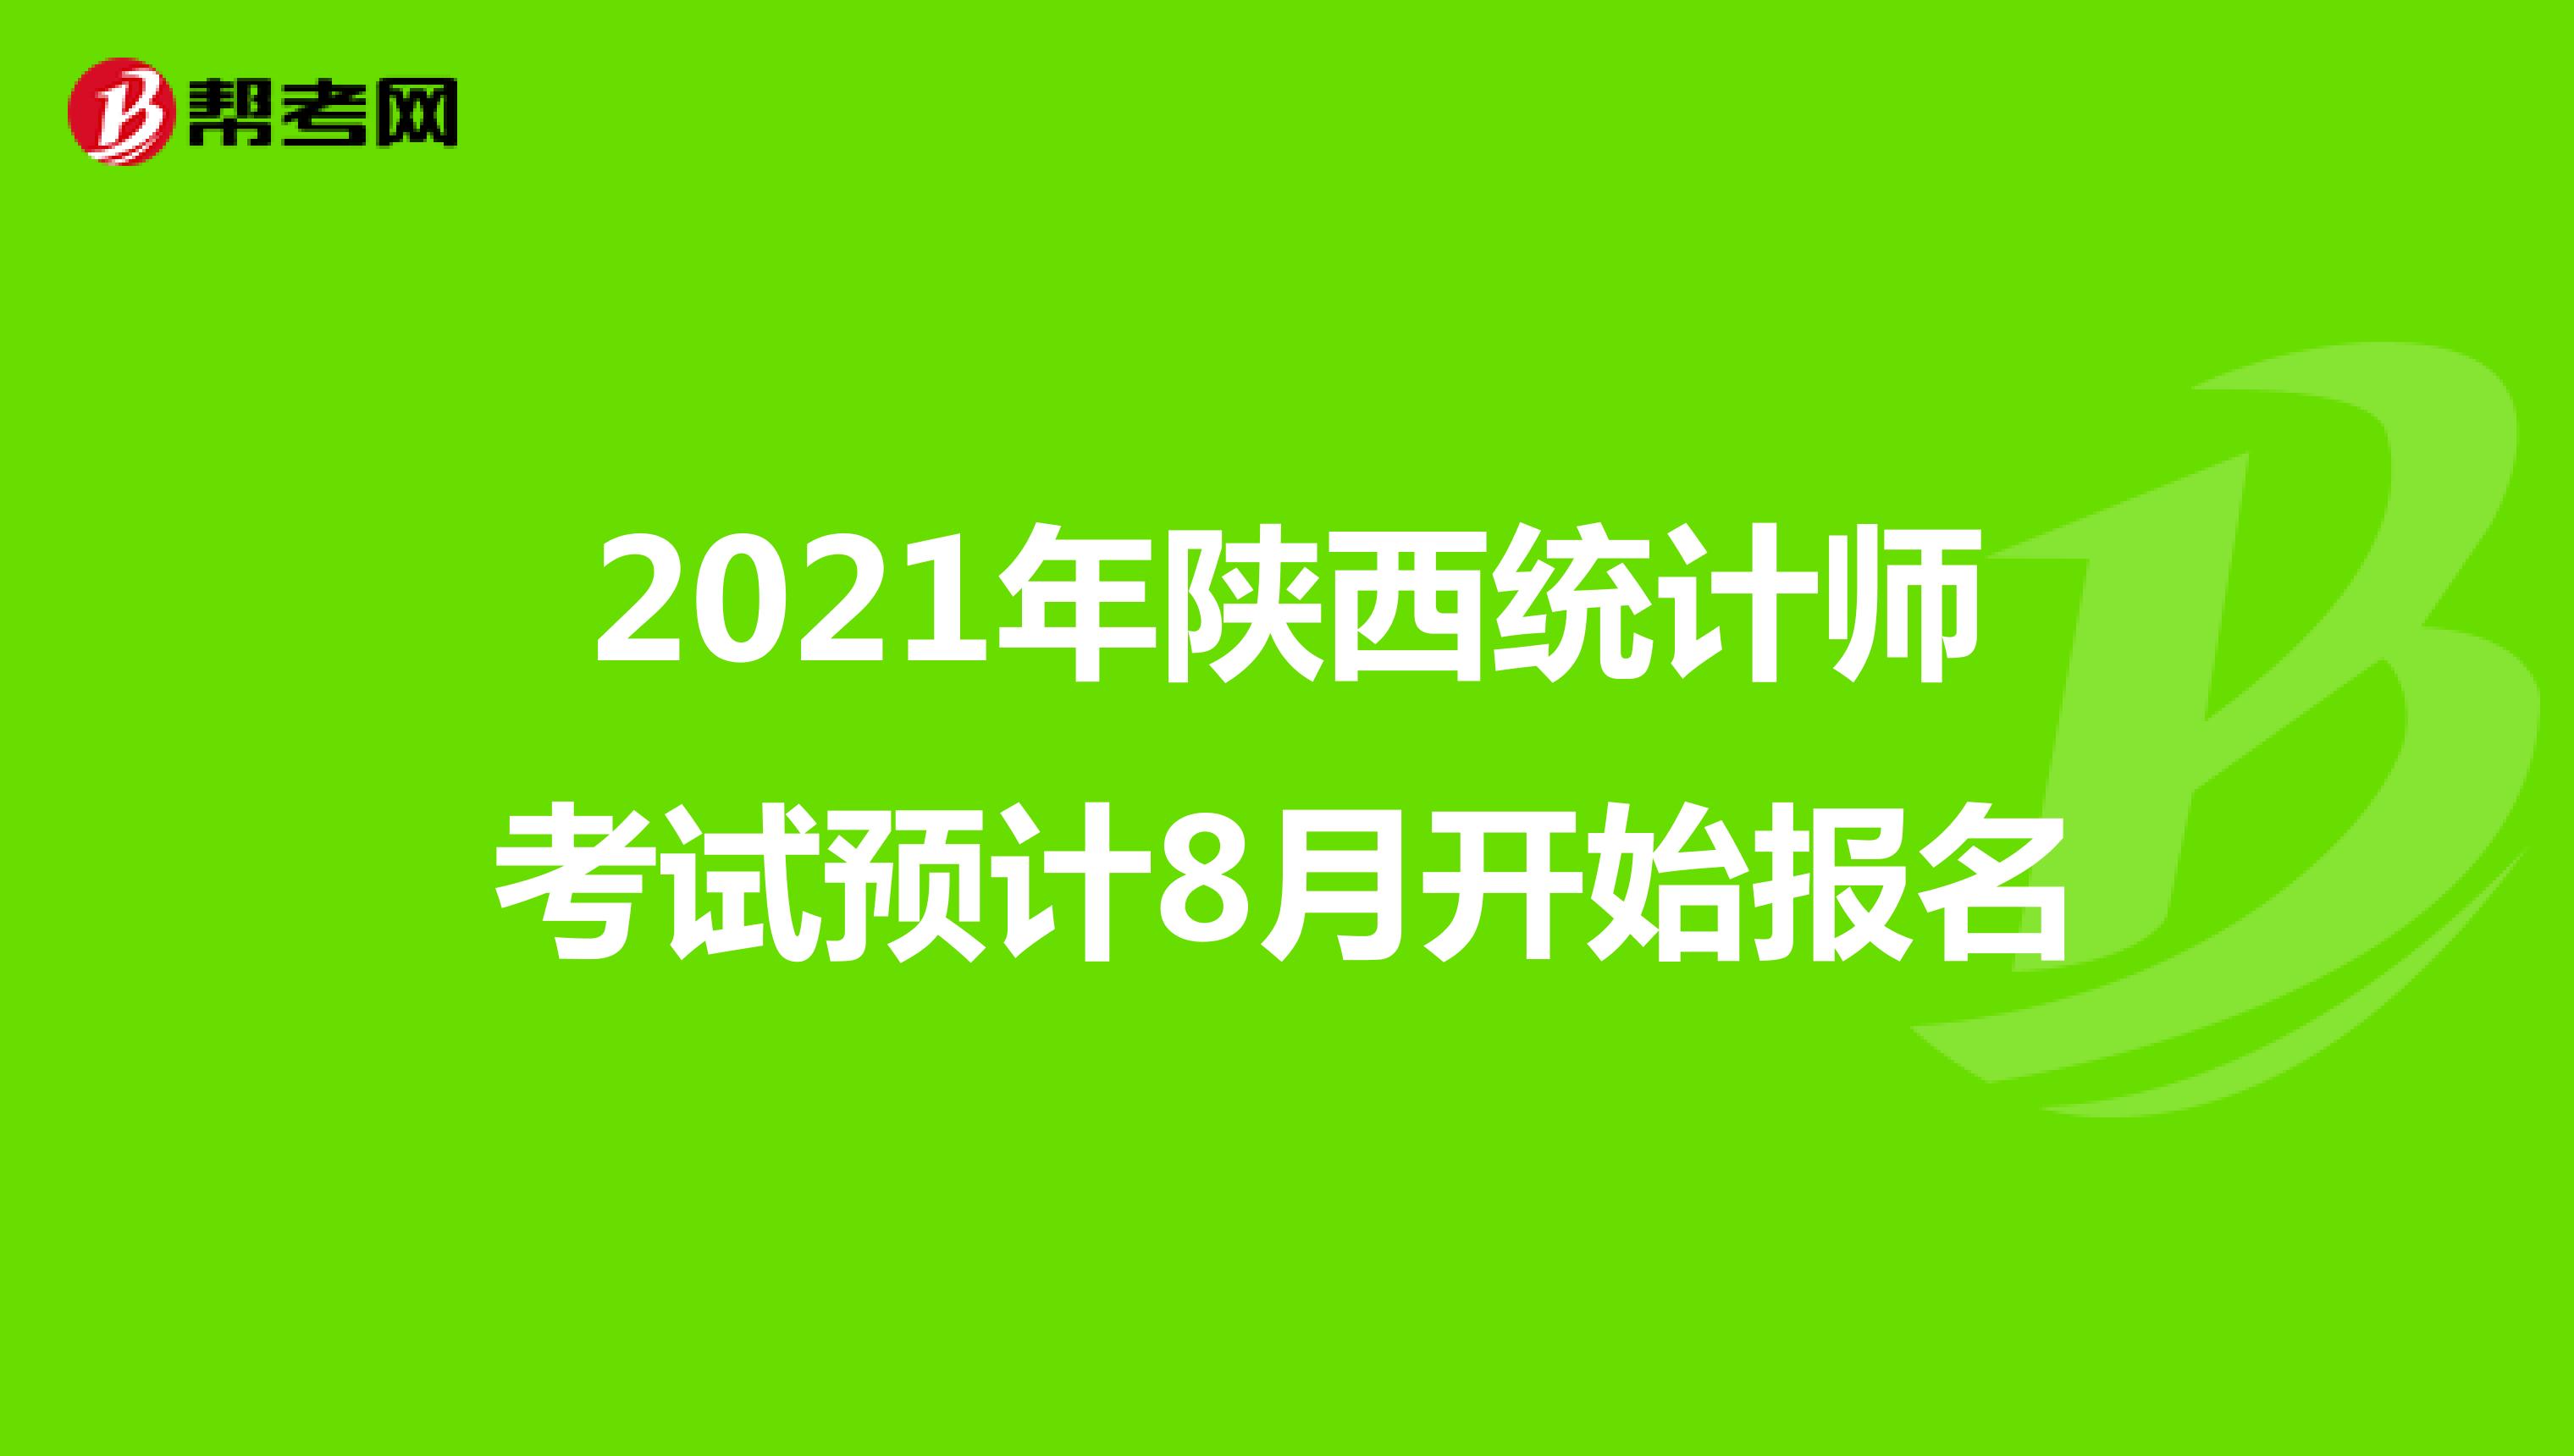 2021年陕西统计师考试预计8月开始报名